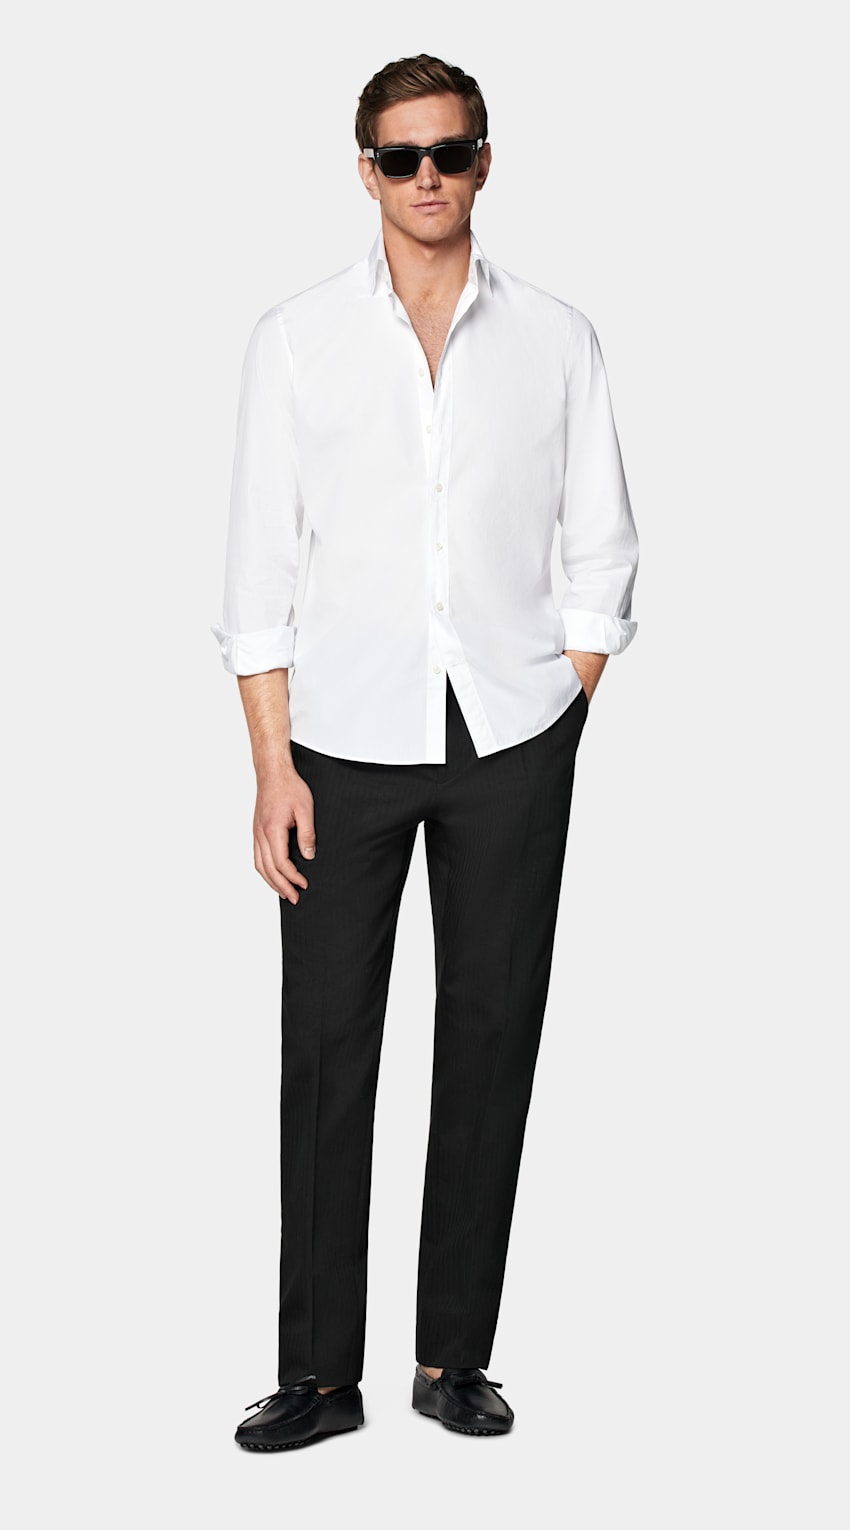 SUITSUPPLY Cotone egiziano - Testa Spa, Italia Camicia bianca popeline vestibilità slim